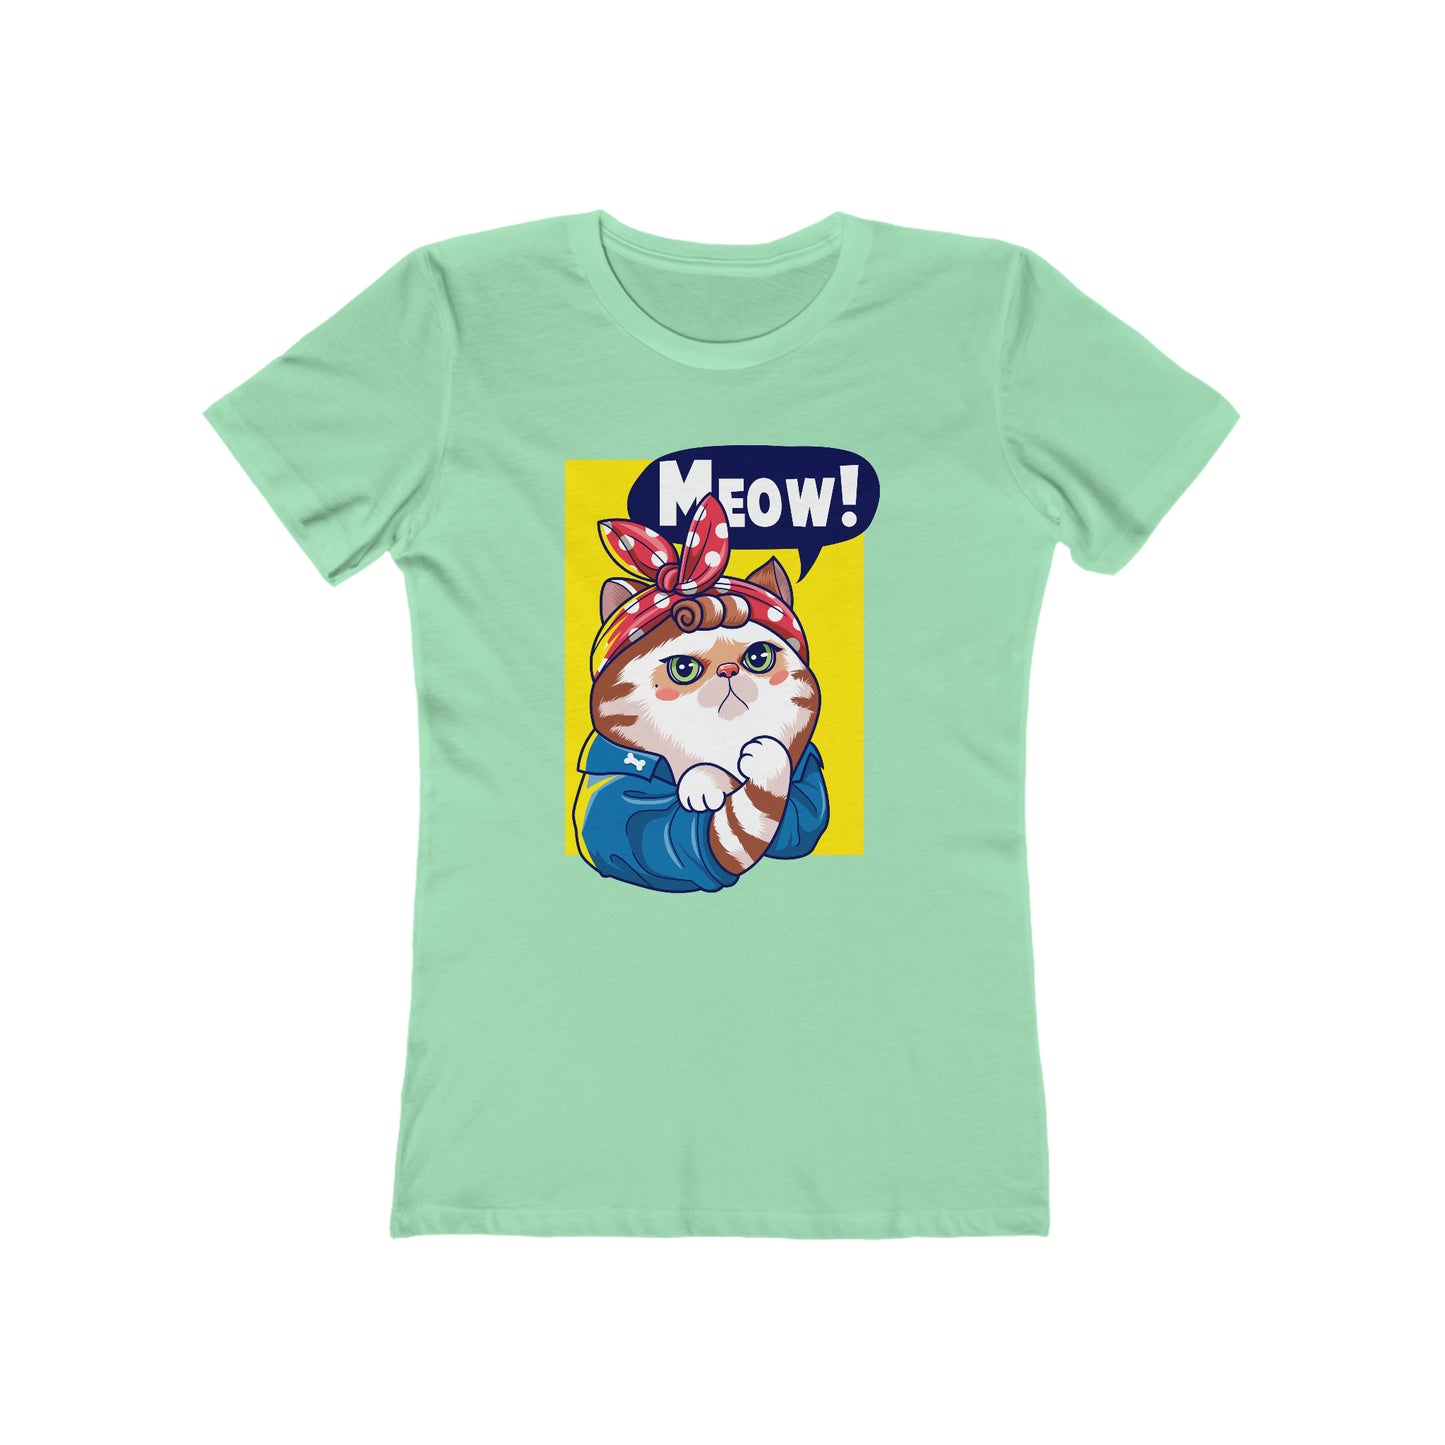 Meow! - Women's T-shirt